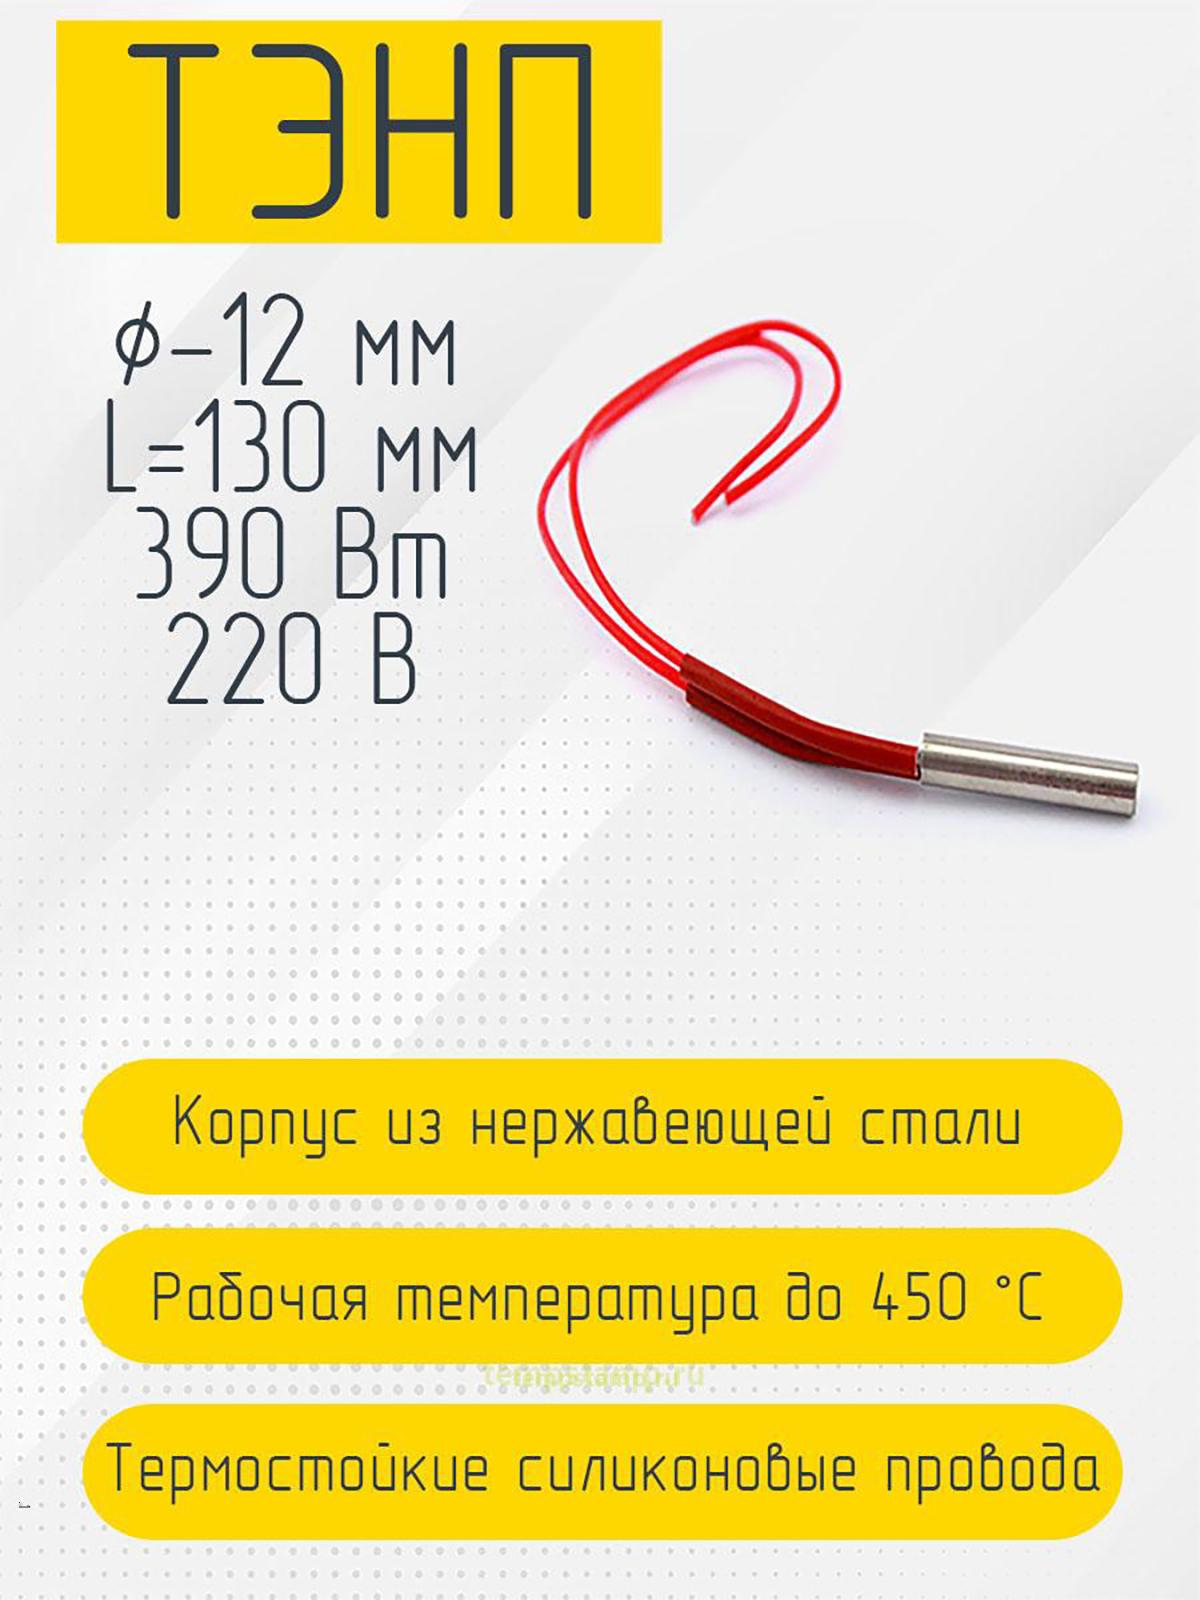 Патронный нагреватель 12 мм, 220 В (12 х 130 мм, 390 Вт)